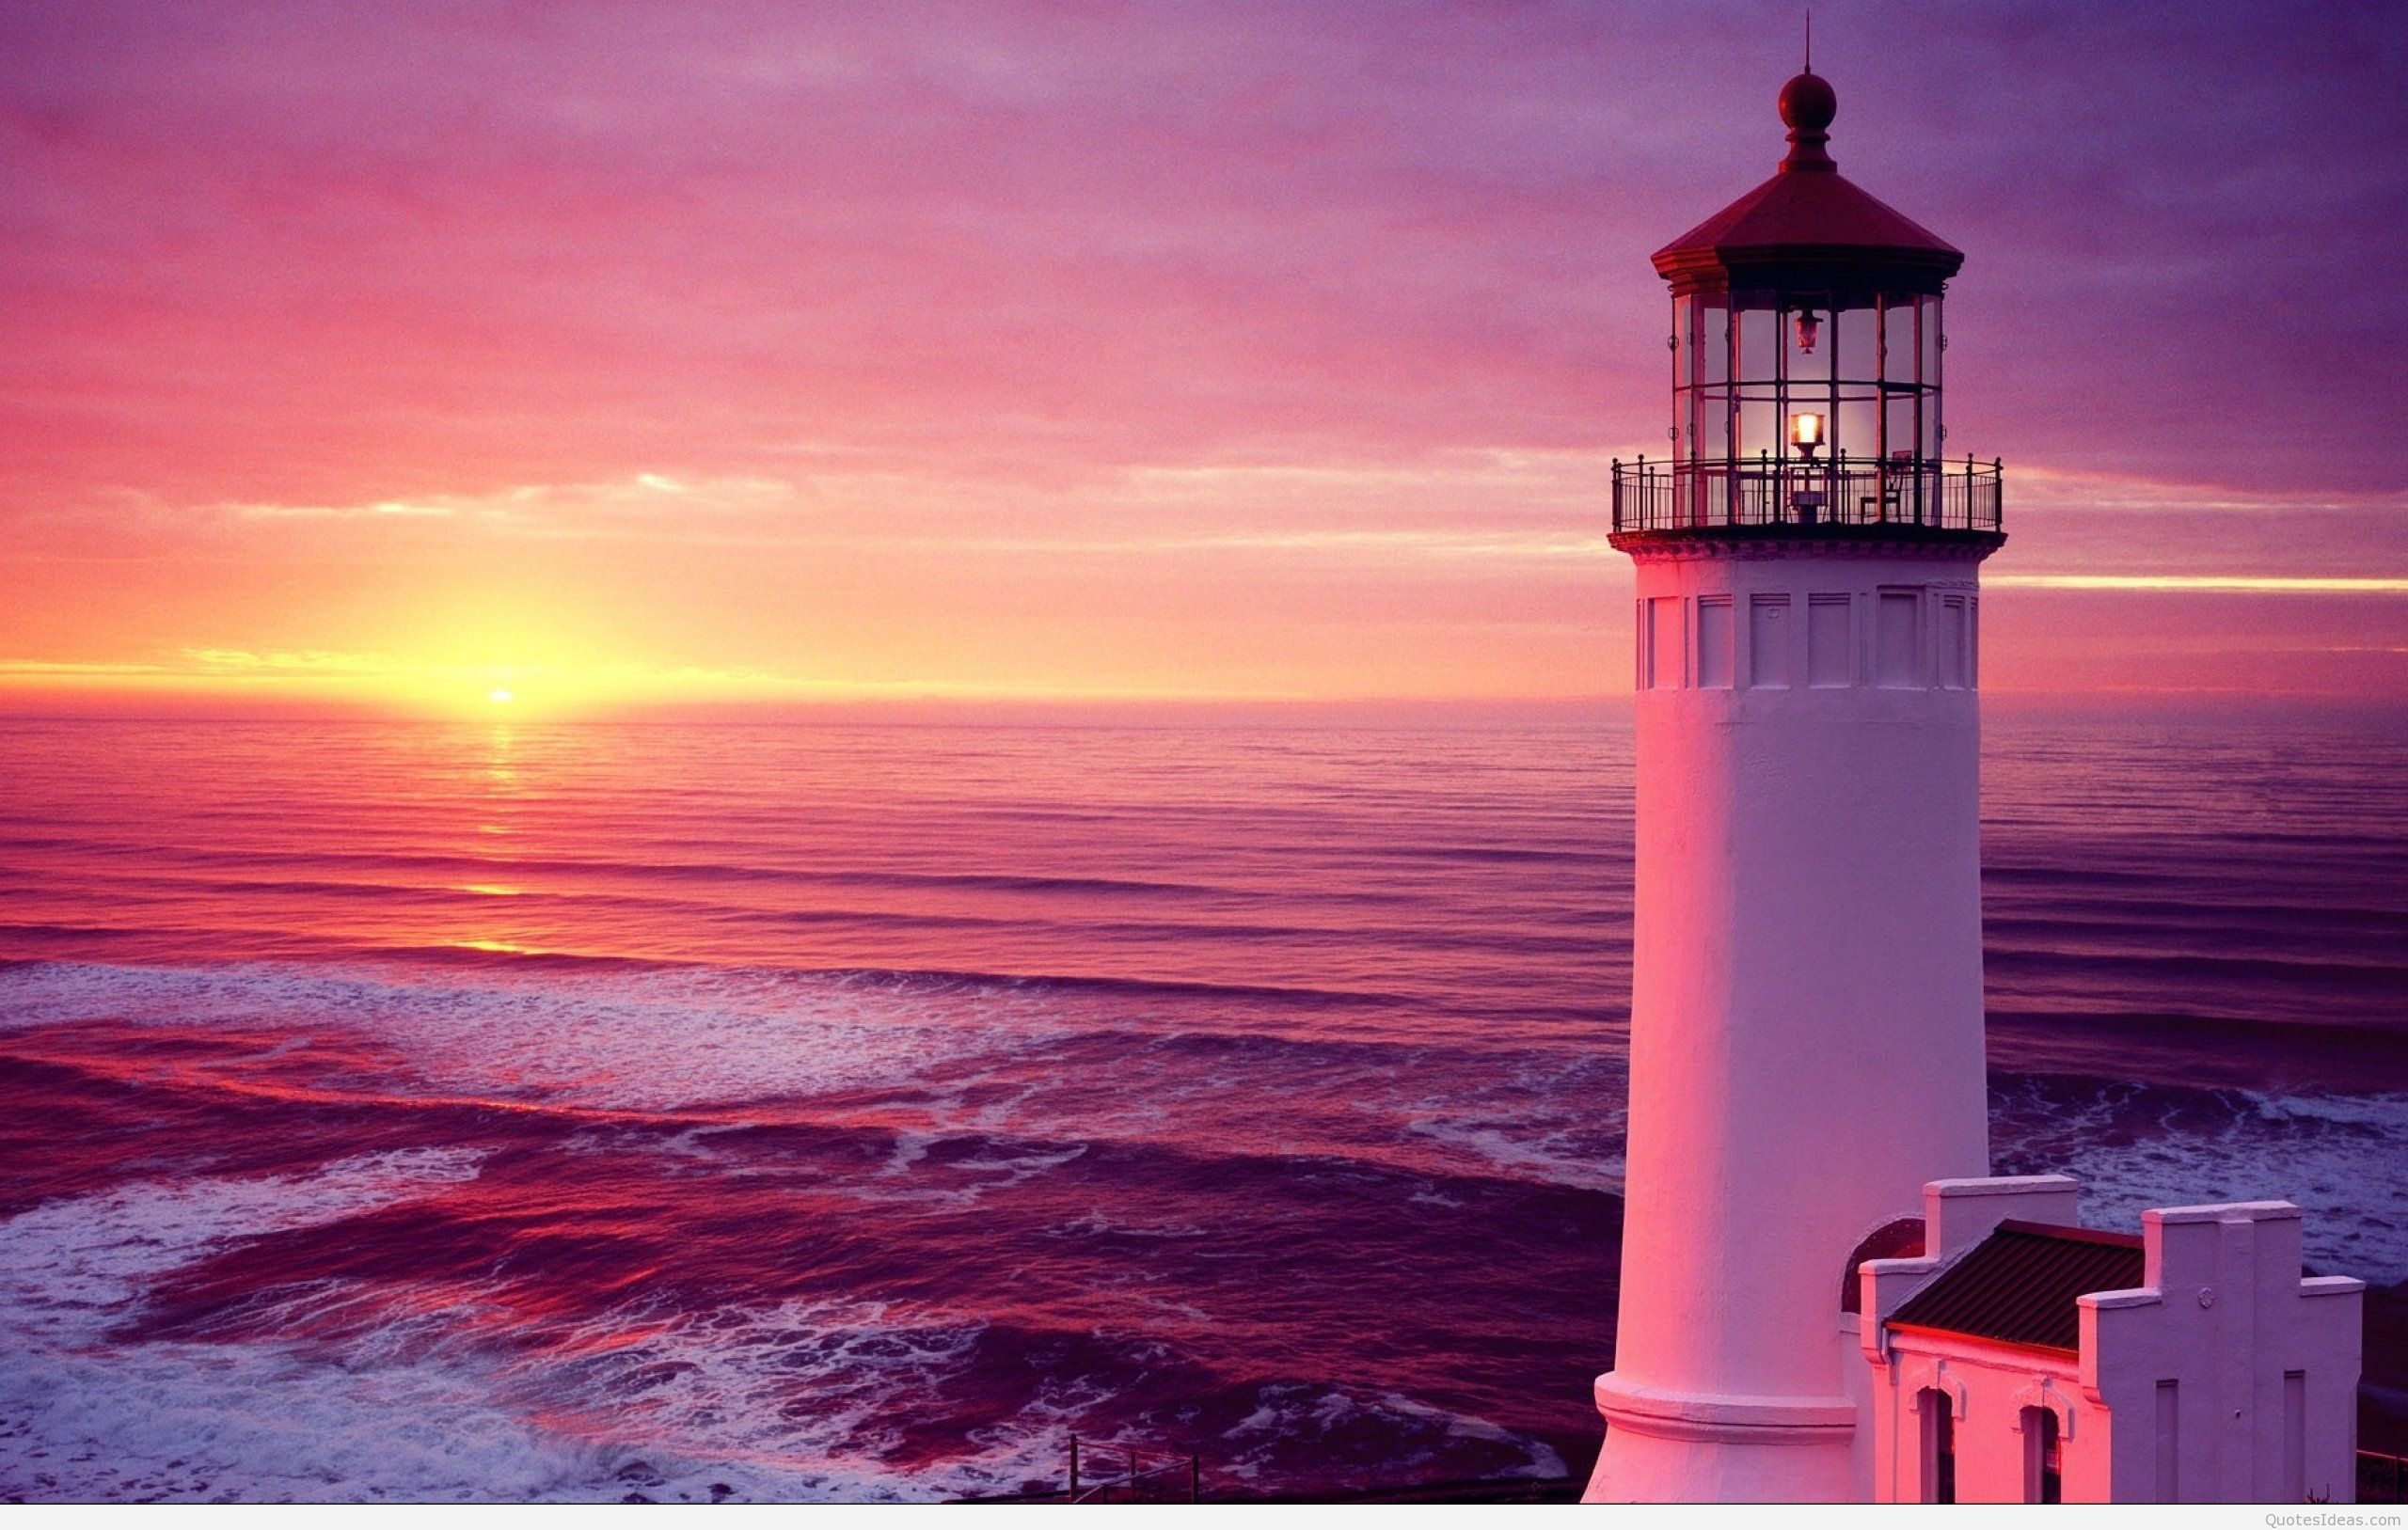 Summer Sunset Lighthouse Desktop Wallpaper Free Summer Sunset Lighthouse Desktop Background